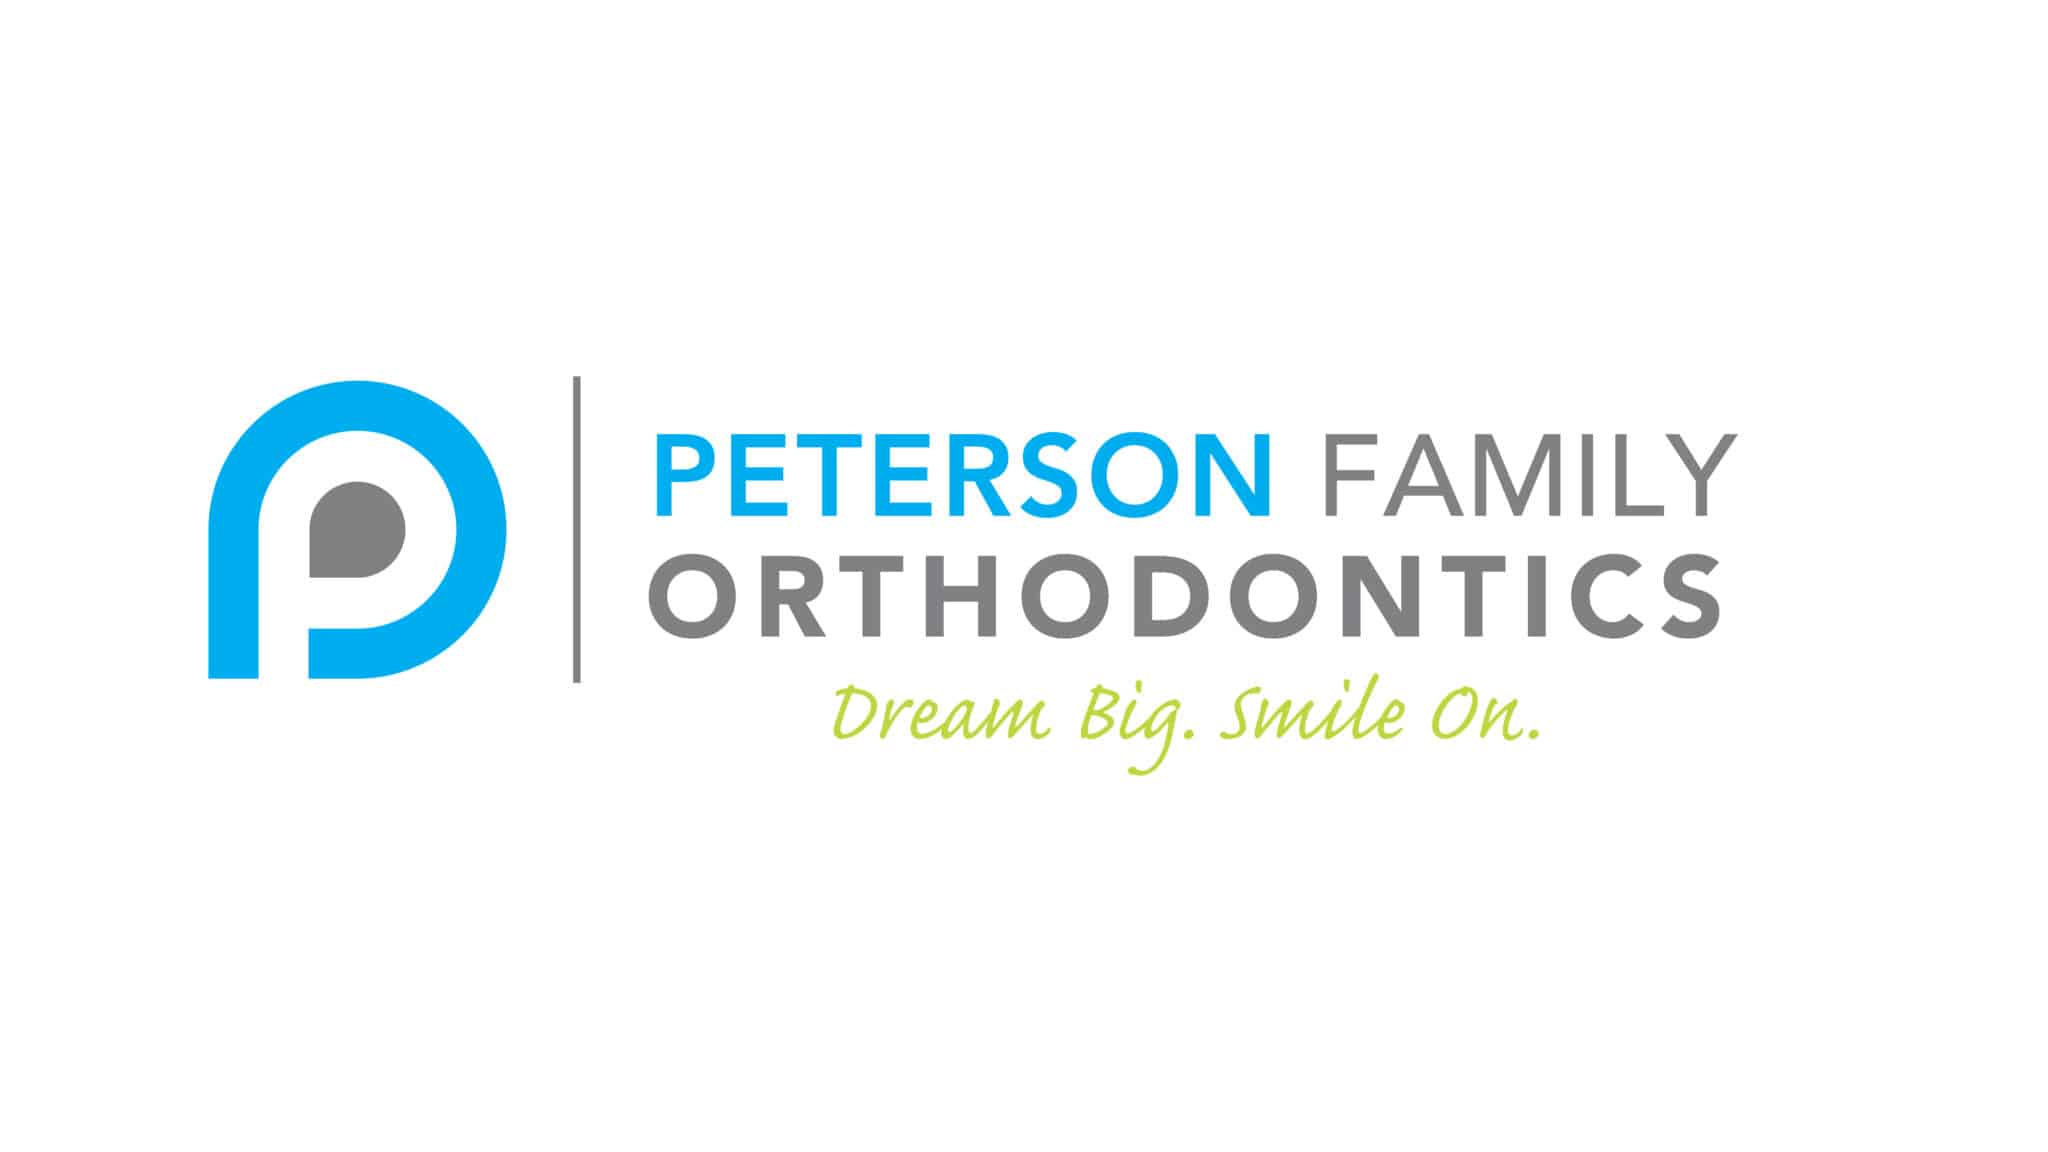 Peterson Family Orthodontics